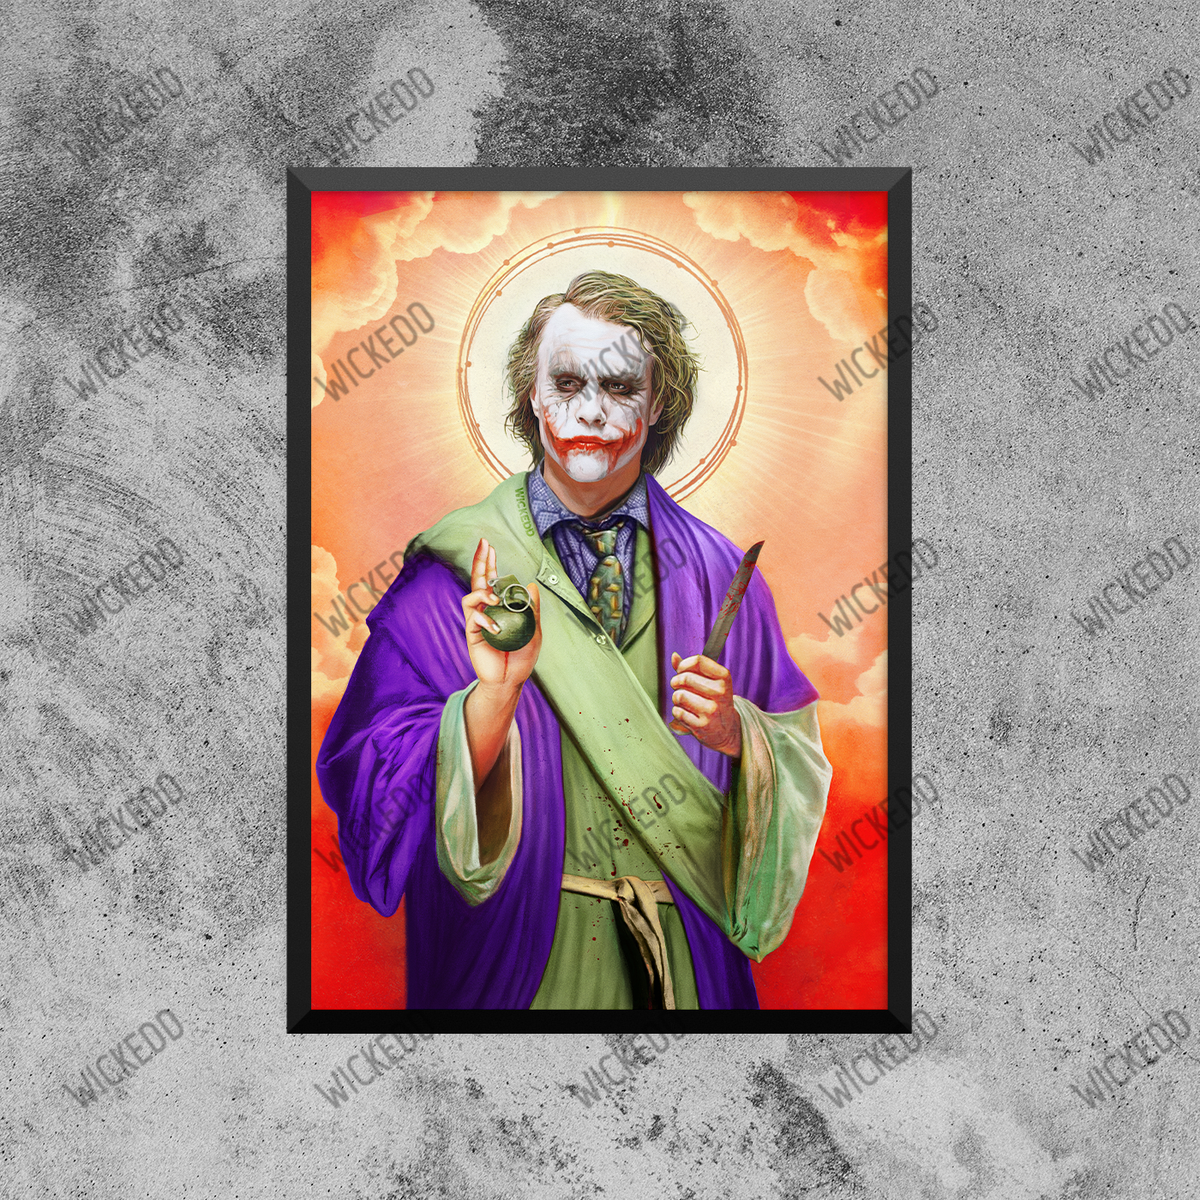 Saint Joker (Heath)